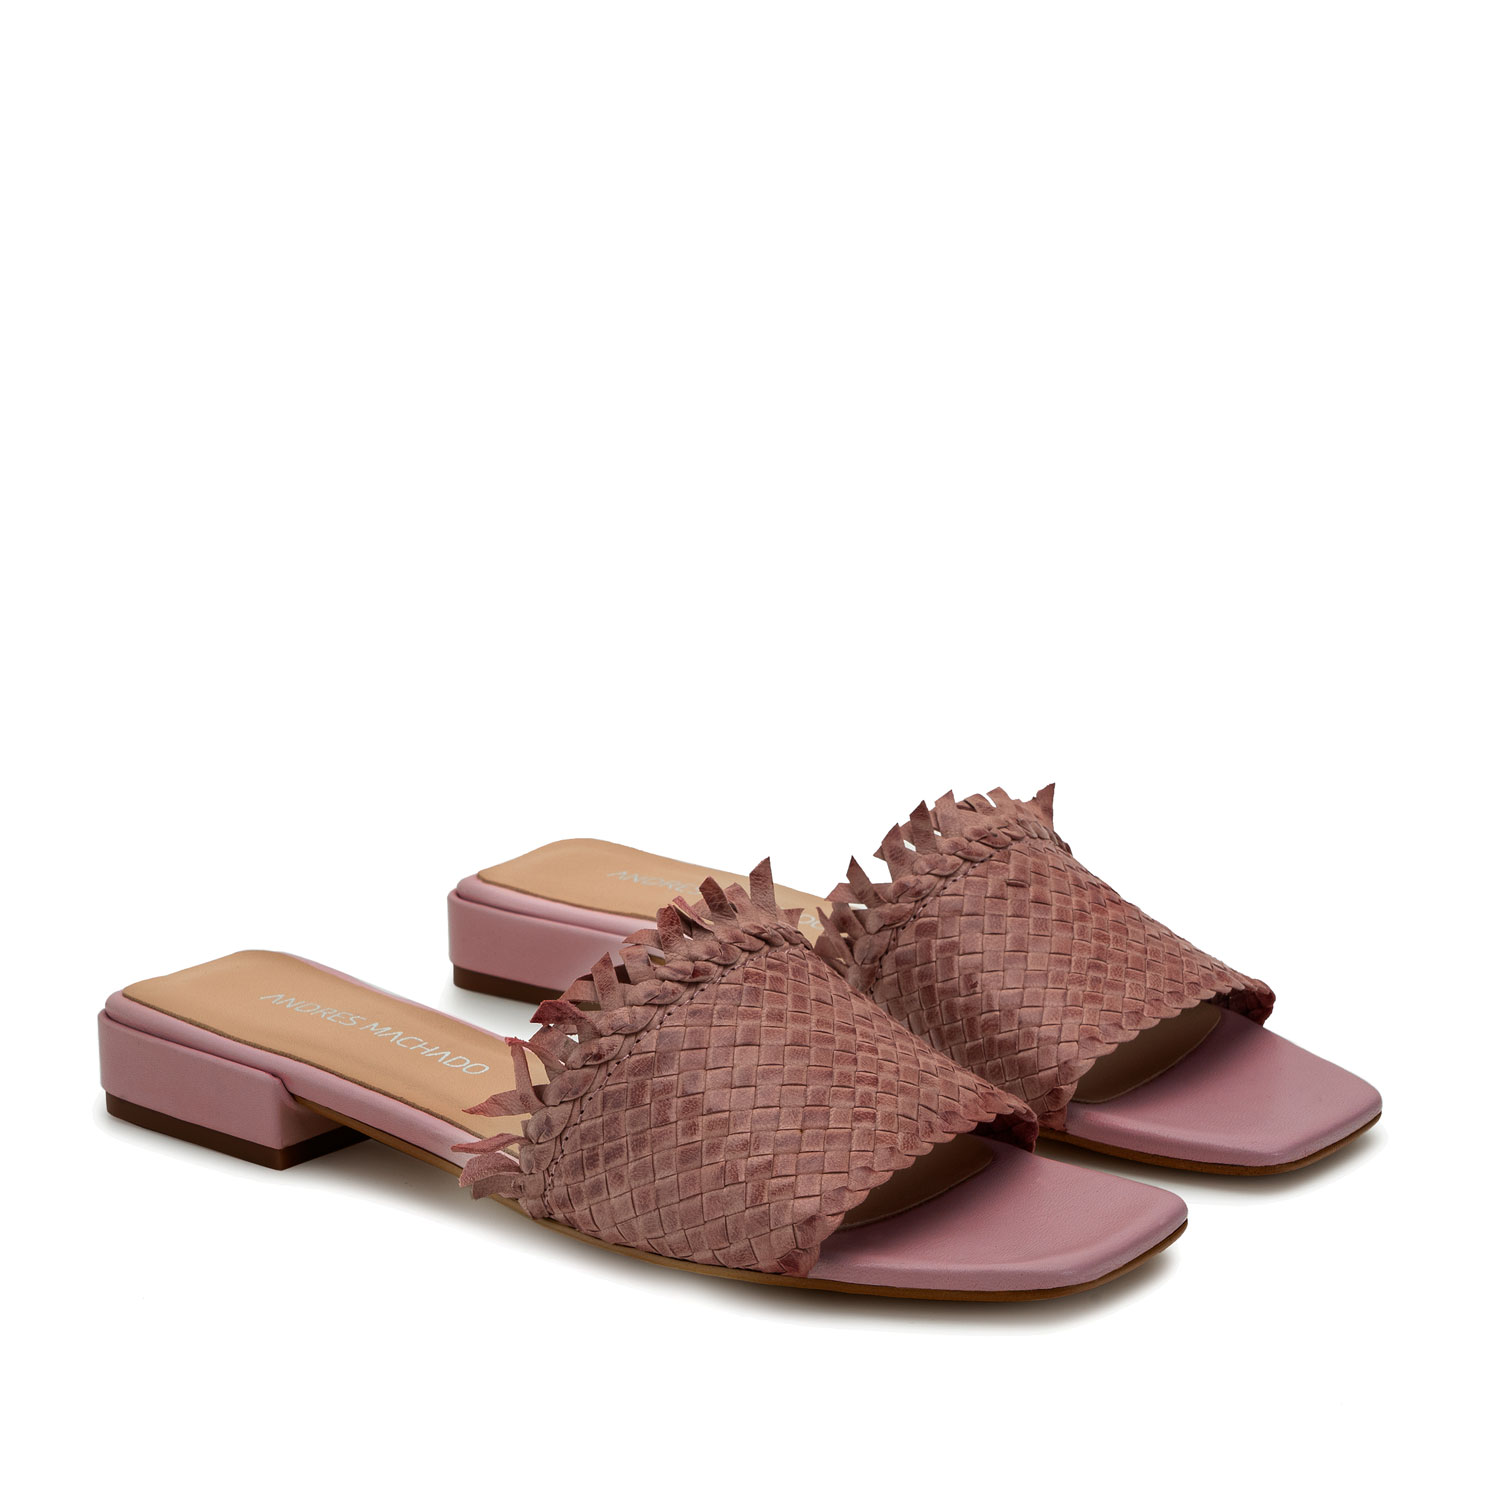 Sandalen aus rosanem Leder - MADE IN SPAIN - 